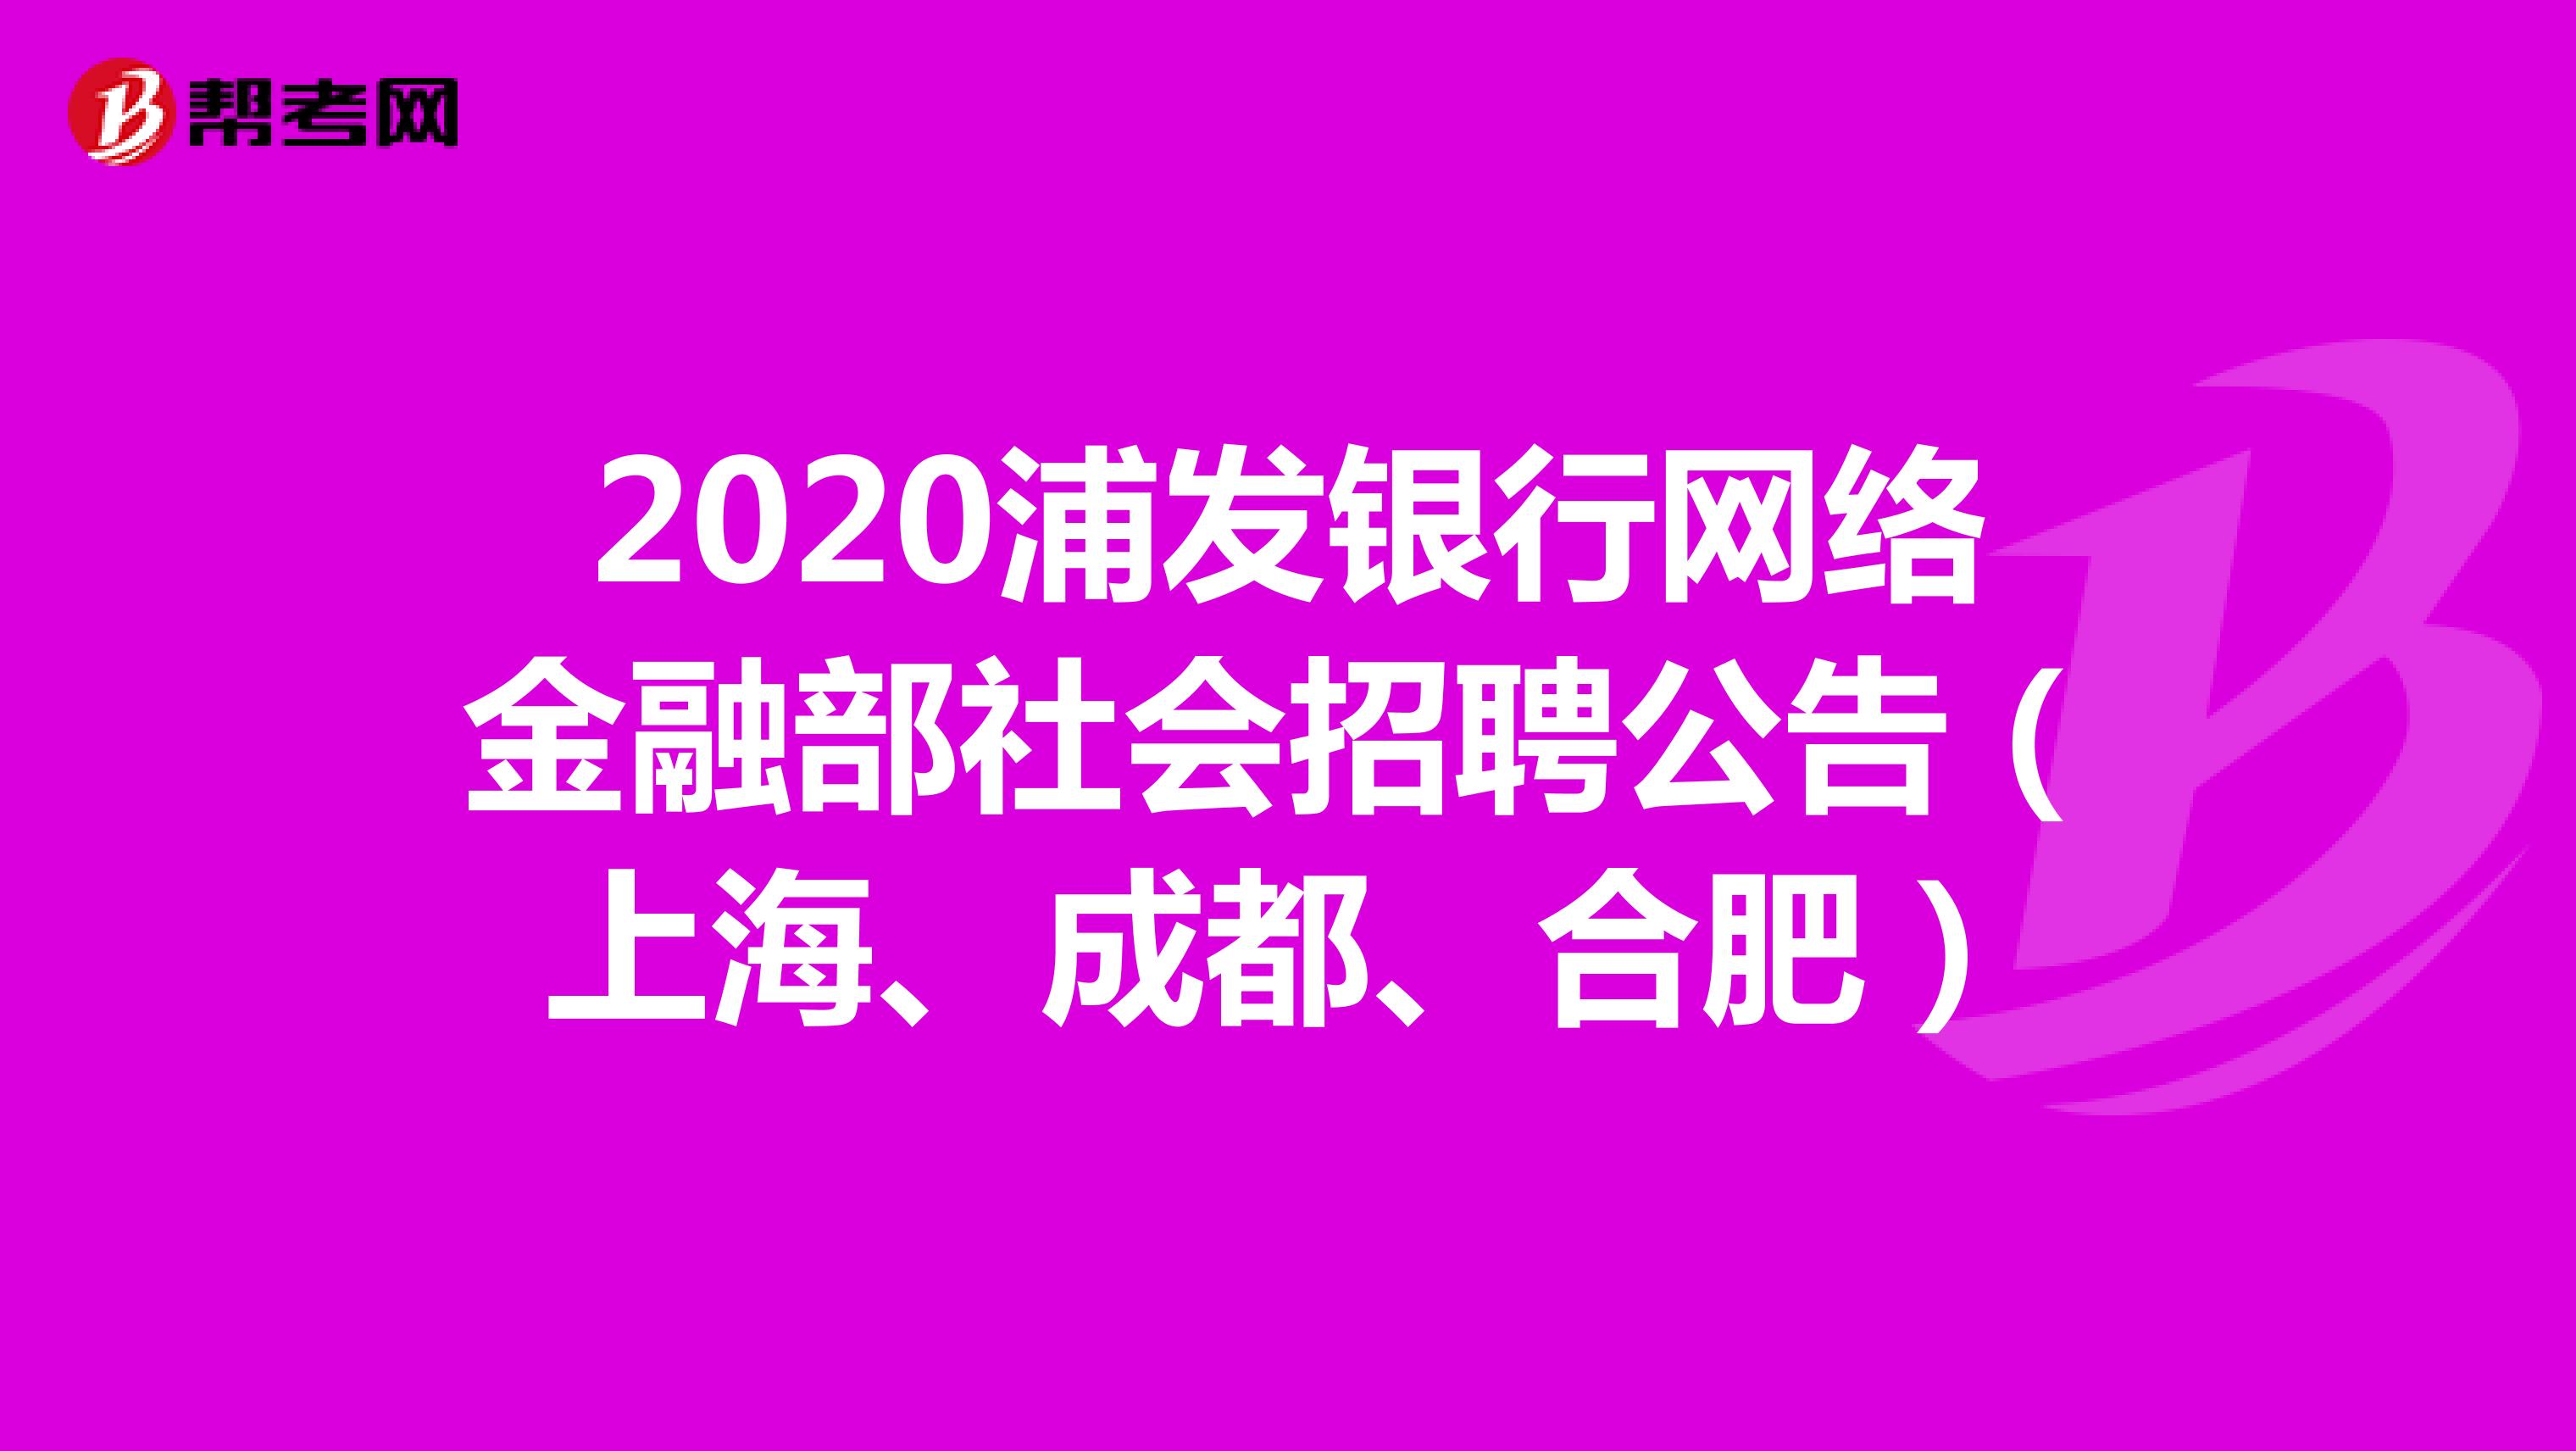 2020浦发银行网络金融部社会招聘公告（上海、成都、合肥）